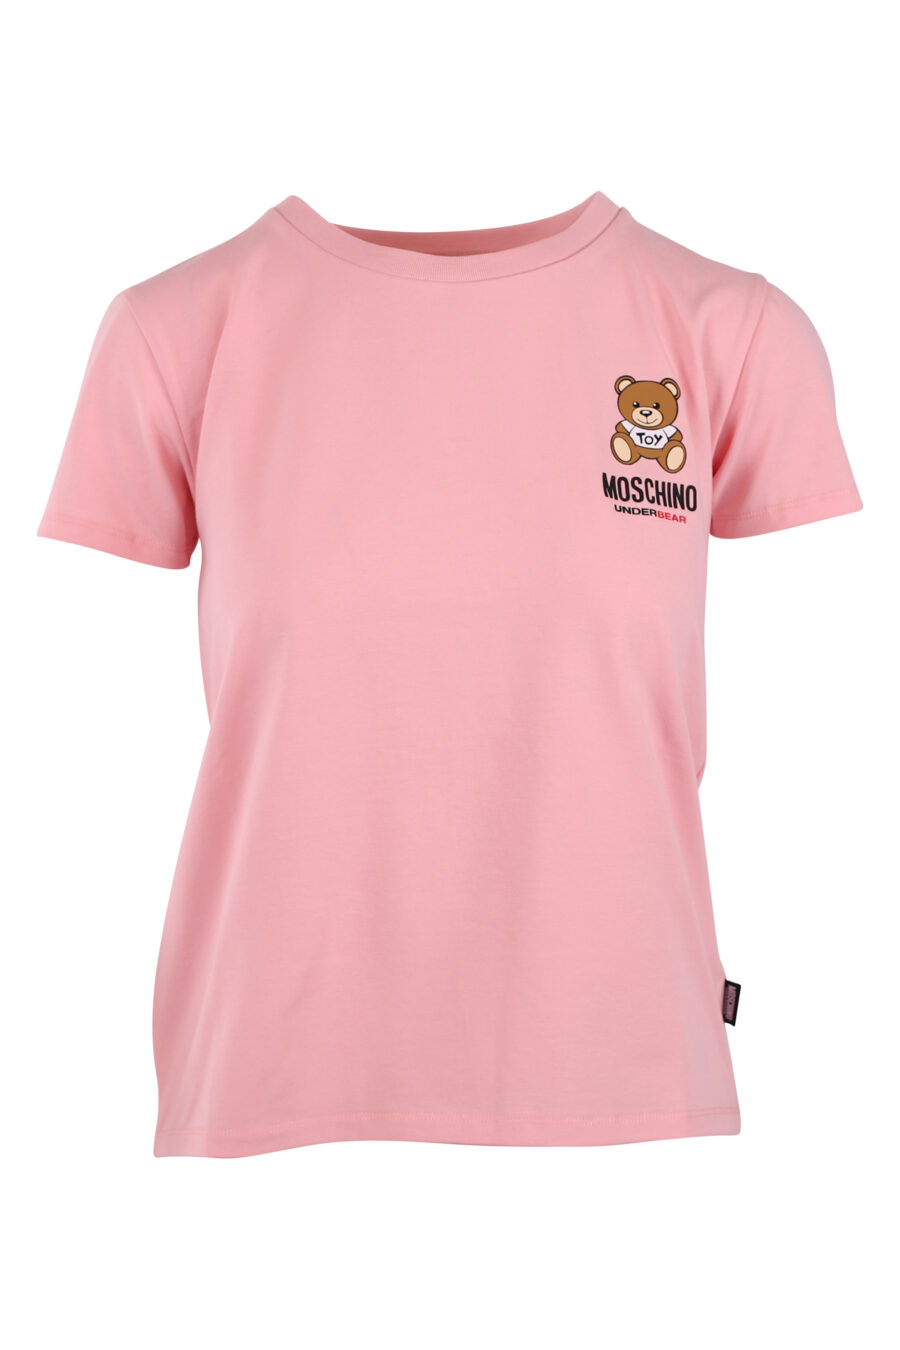 Rosa T-Shirt mit kleinem Bärenlogo - IMG 6243